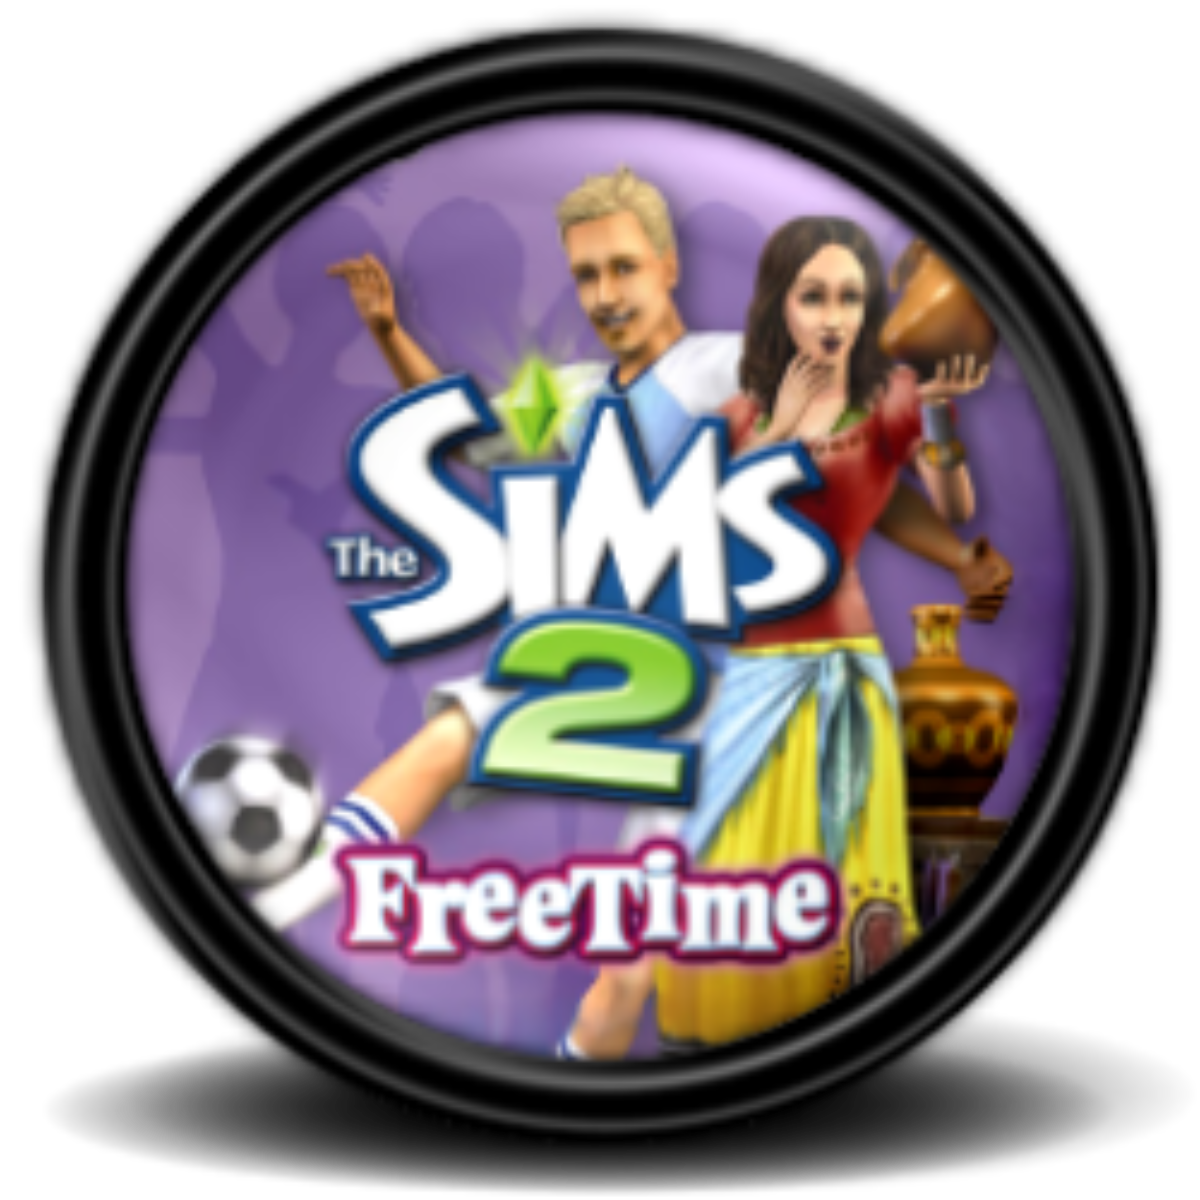 sims 2 freetime